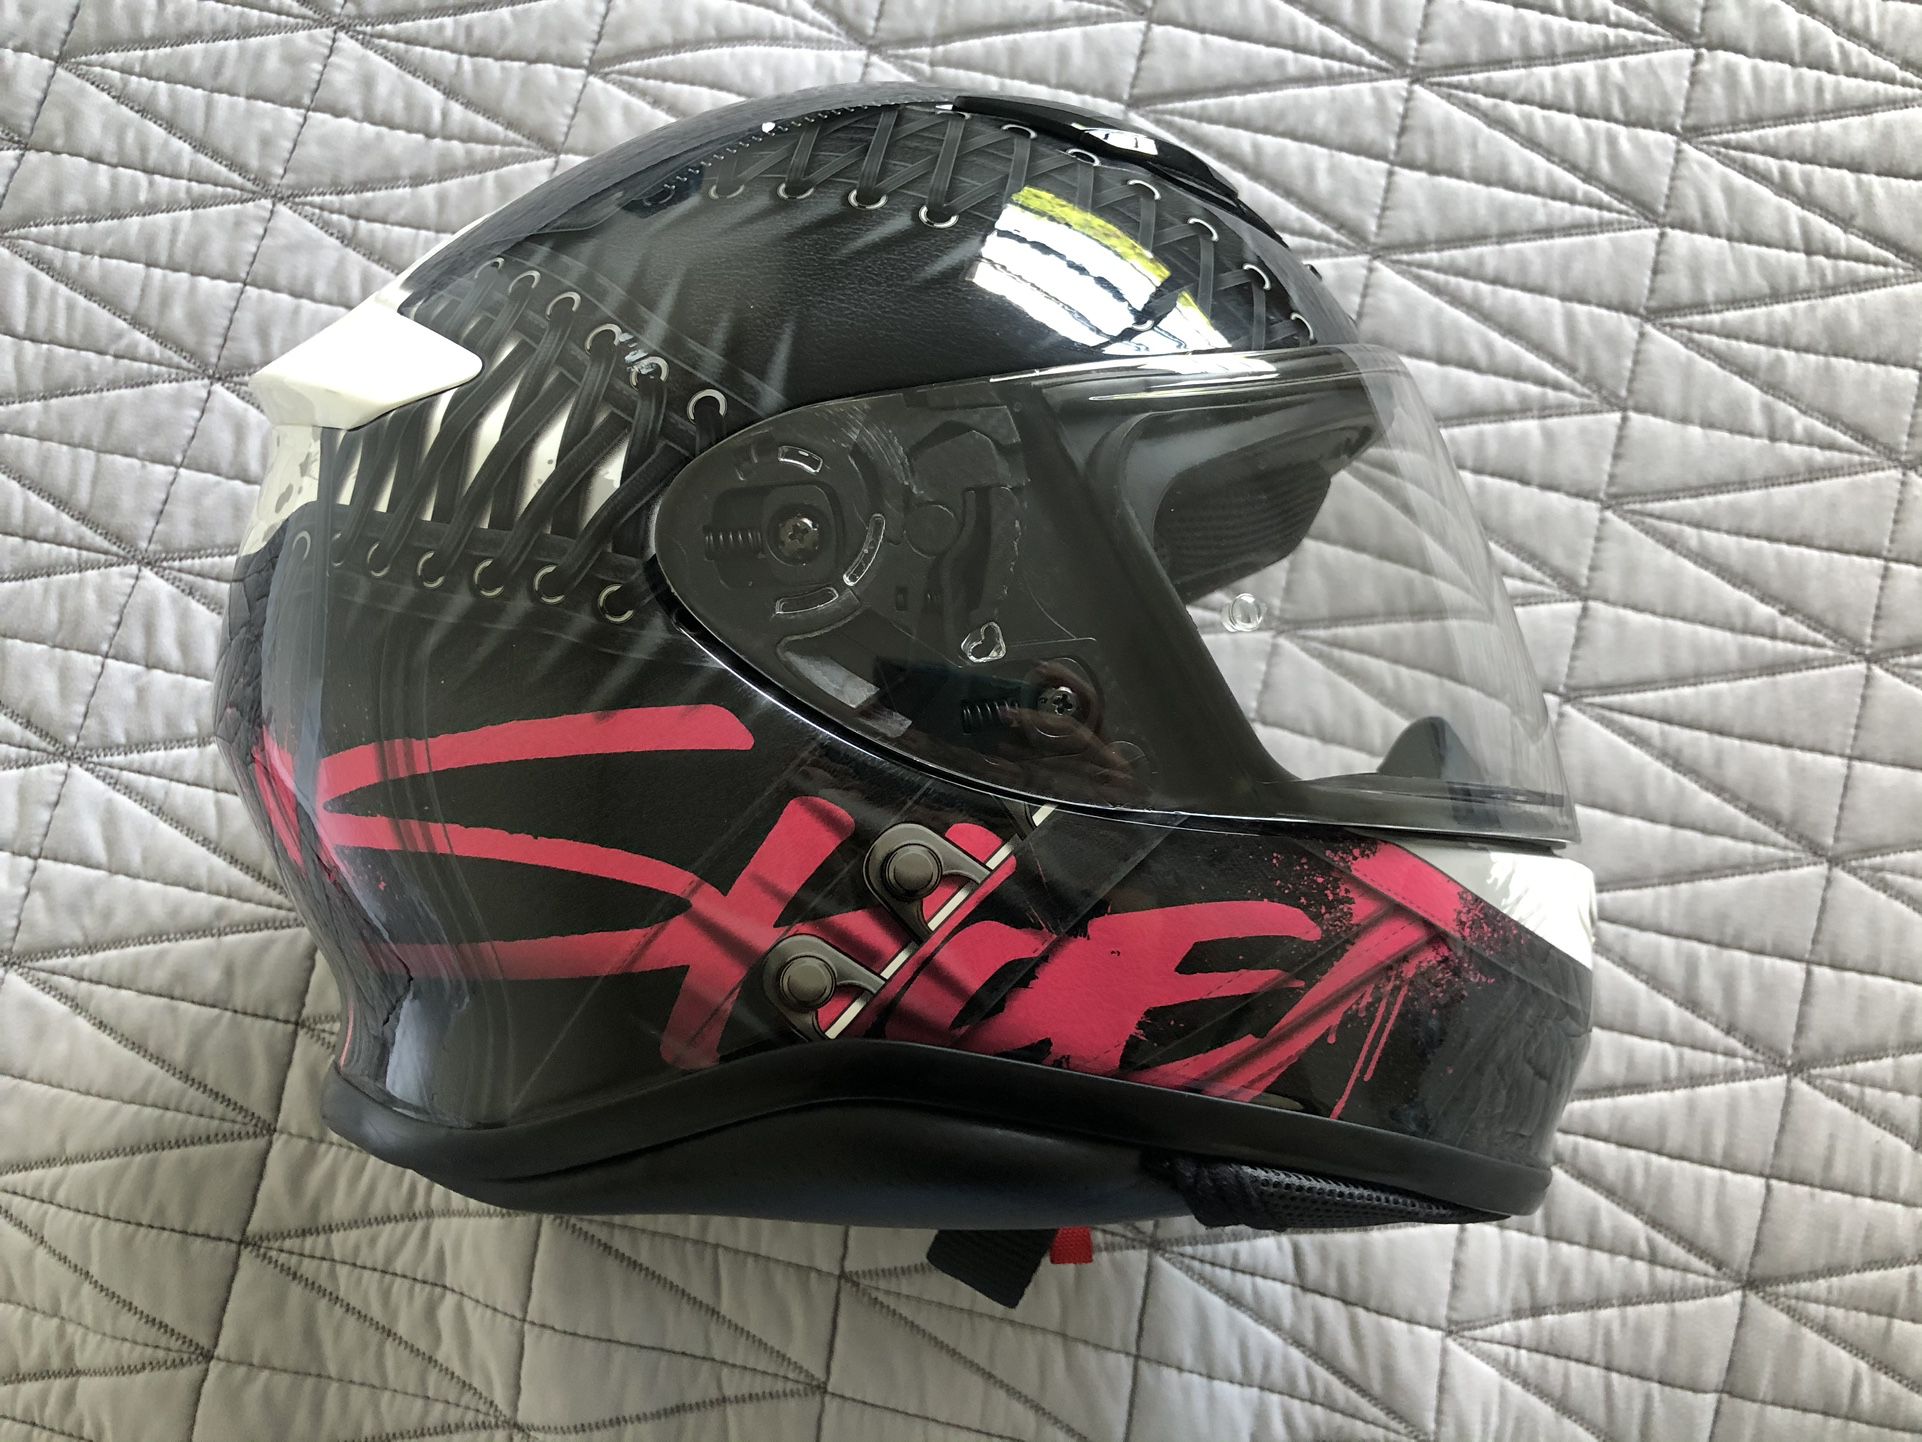 Shoei RF 1200 Seduction Motorcycle Helmet